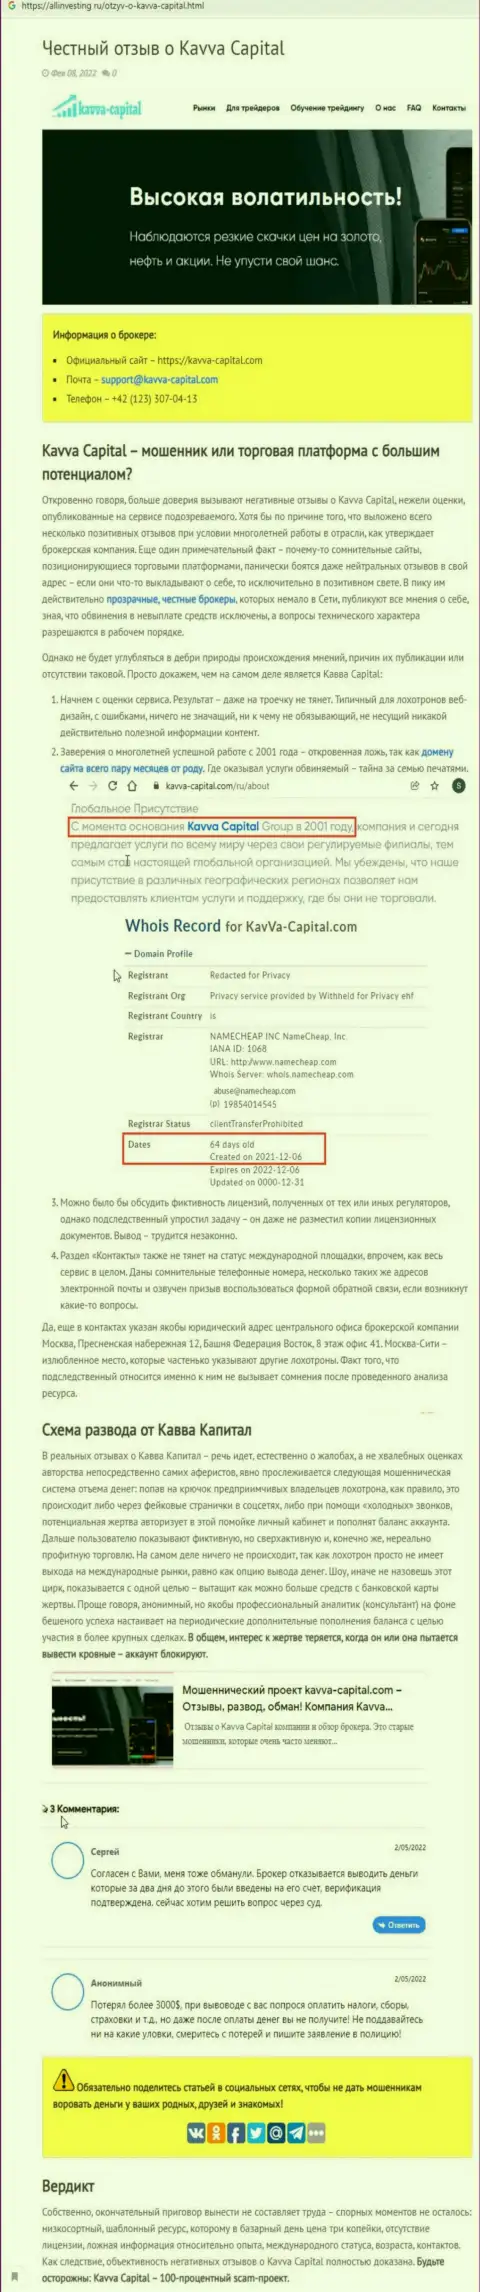 Kavva Capital: обзор неправомерных действий противоправно действующей конторы и отзывы, потерявших вложенные денежные средства реальных клиентов